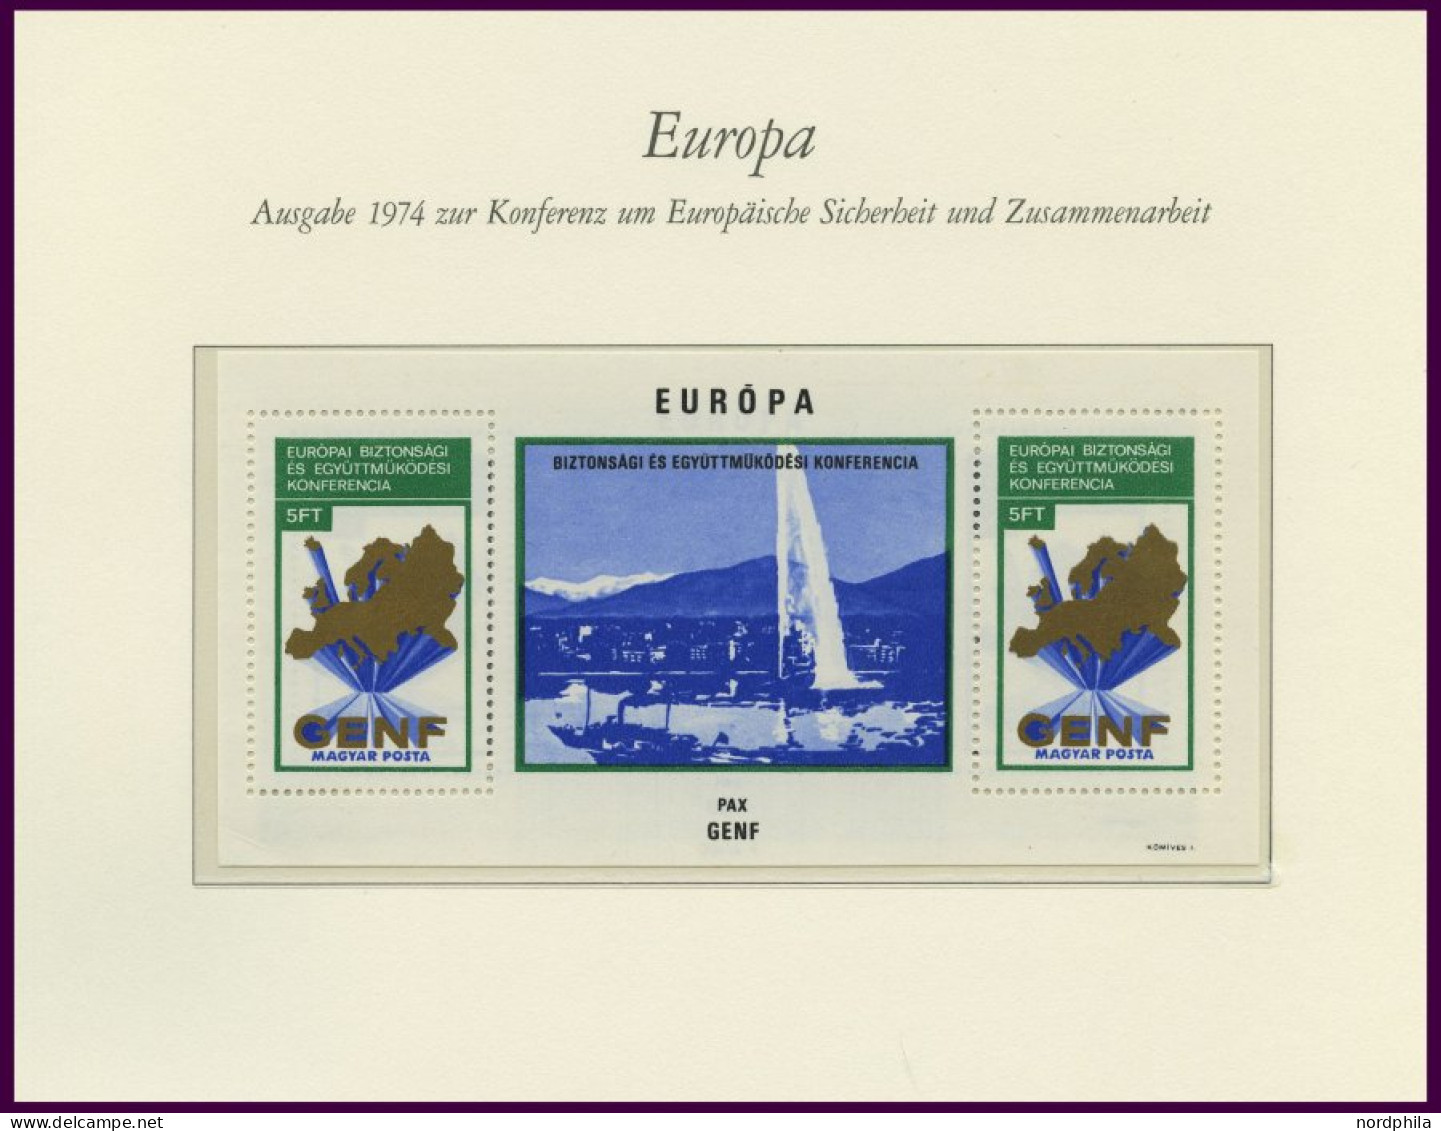 EUROPA UNION , Postfrische Sammlung KSZE Von 1973-83 Auf Borek Falzlosseiten, Mit Bulgarien Bl. 106, Rumänien Bl. 125 Un - Sammlungen